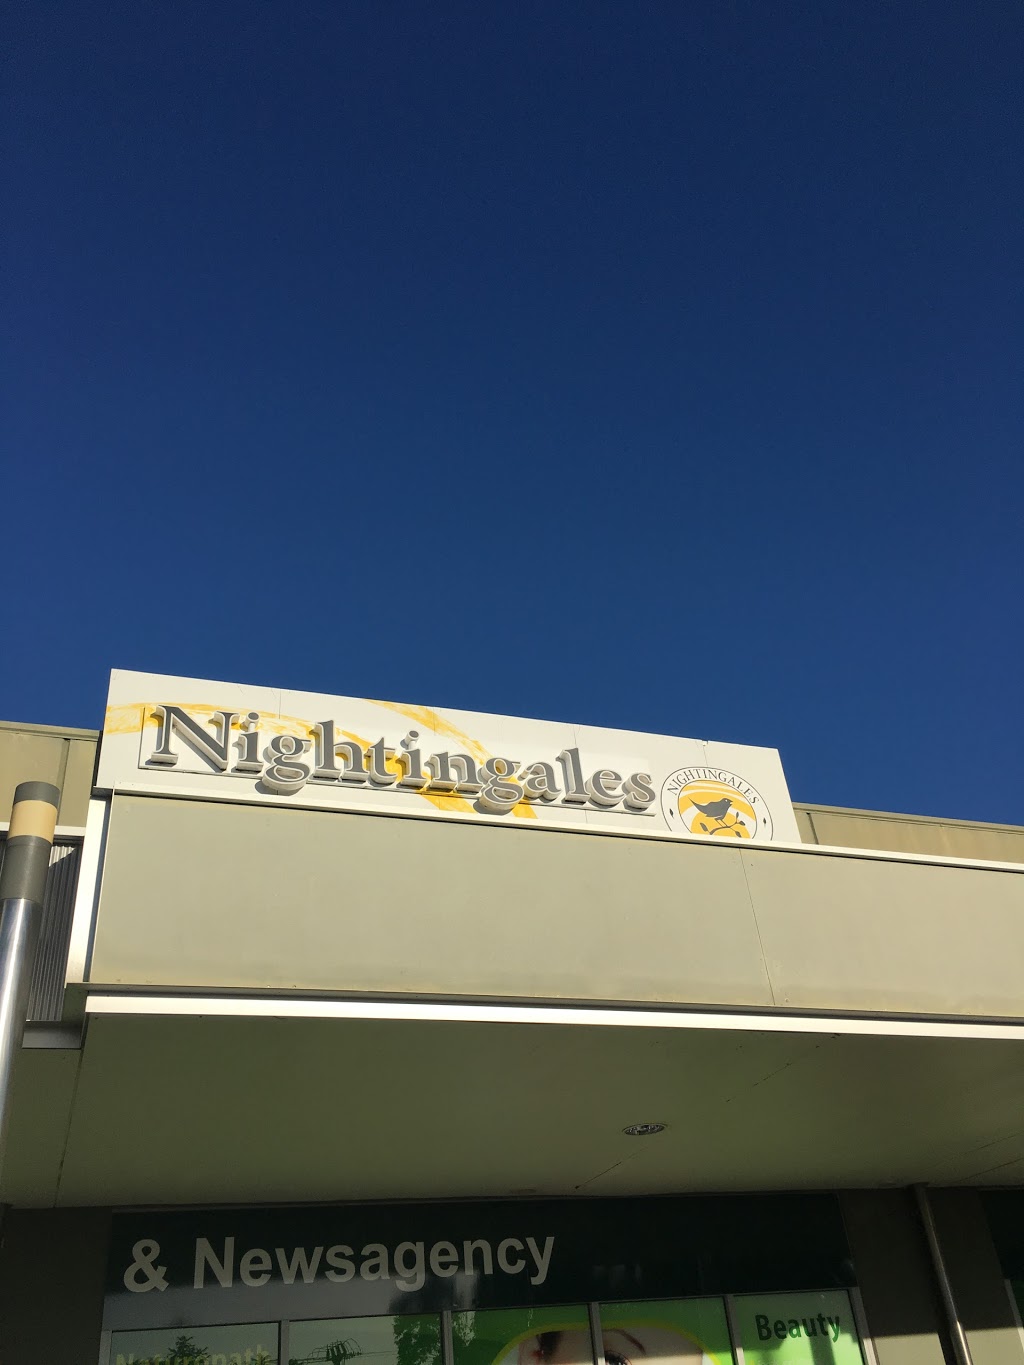 Nightingales Pharmacy and Newsagency - Kalamunda | pharmacy | 121/123 Canning Rd, Kalamunda WA 6076, Australia | 0892932621 OR +61 8 9293 2621